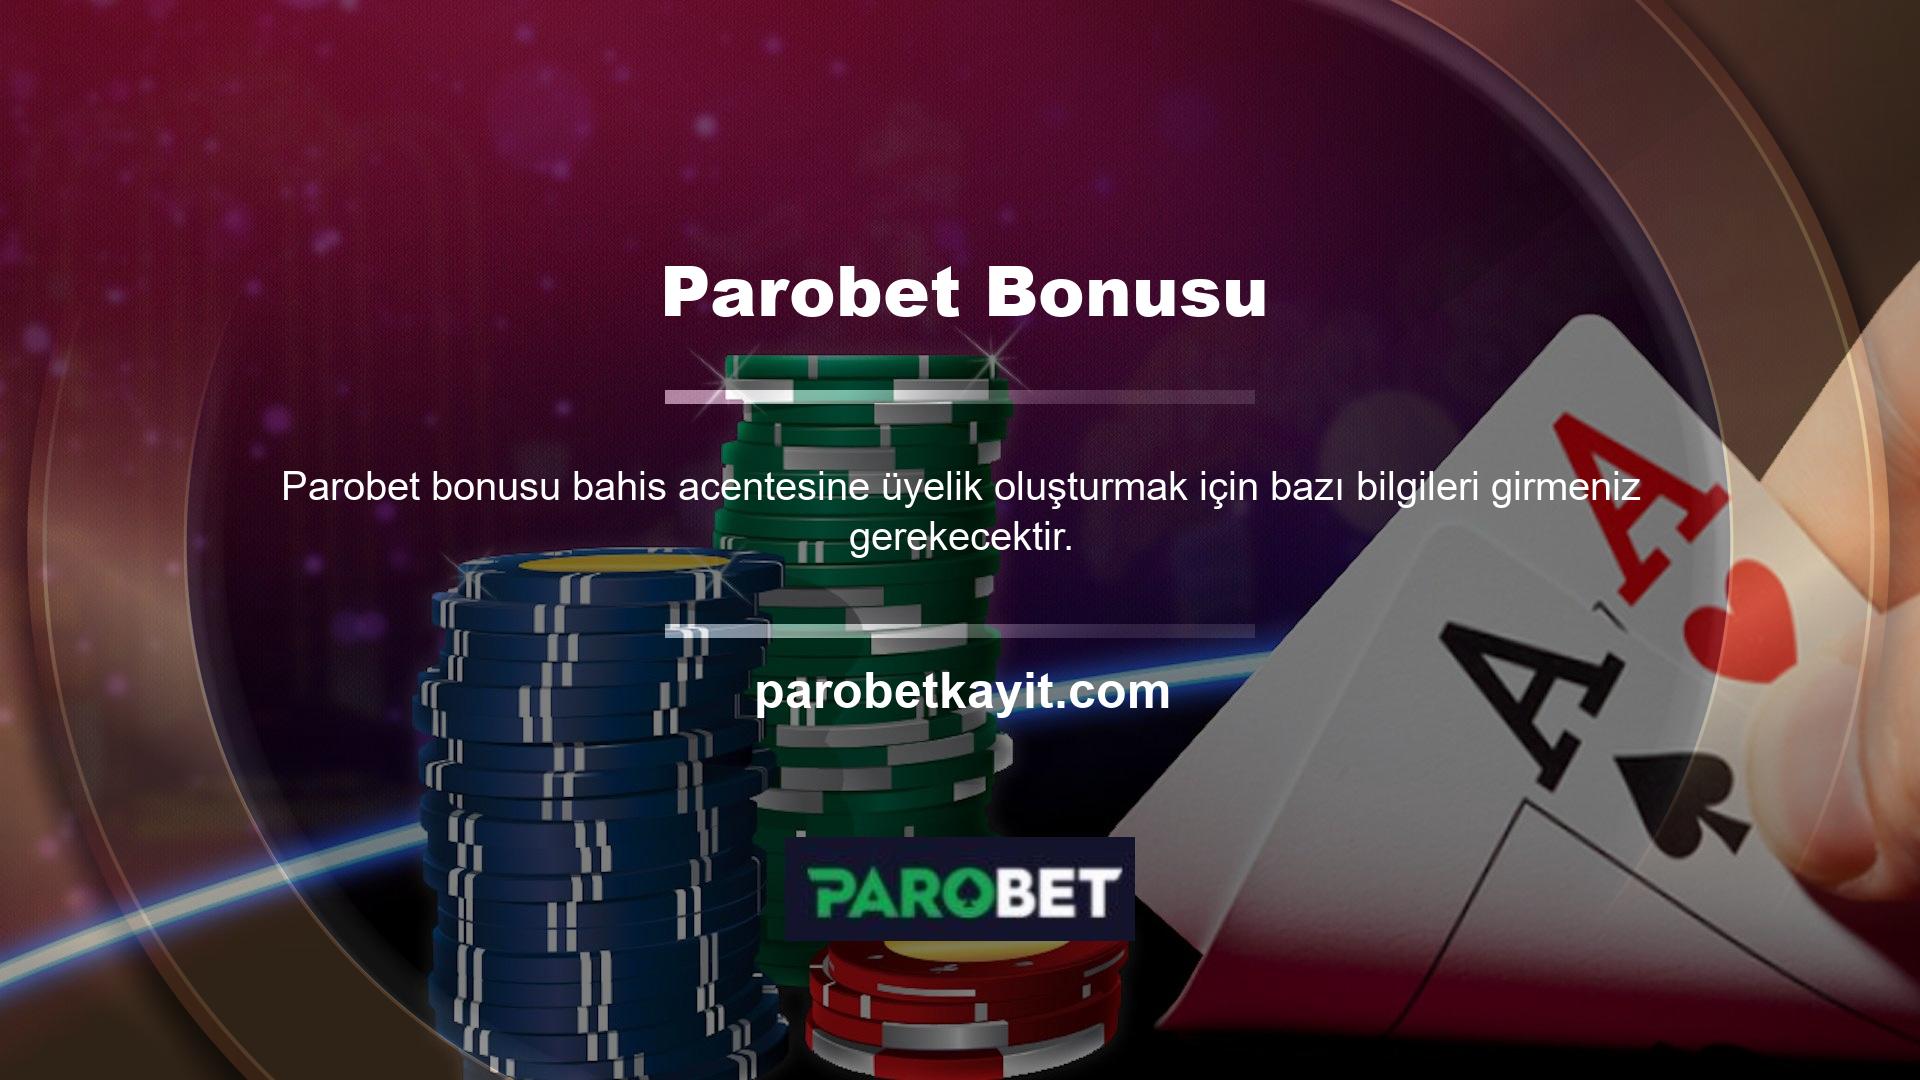 Ayrıca Türkiye’deki canlı bahis acentelerinden biri olan Parobet web sitesine de kayıt olabilirsiniz